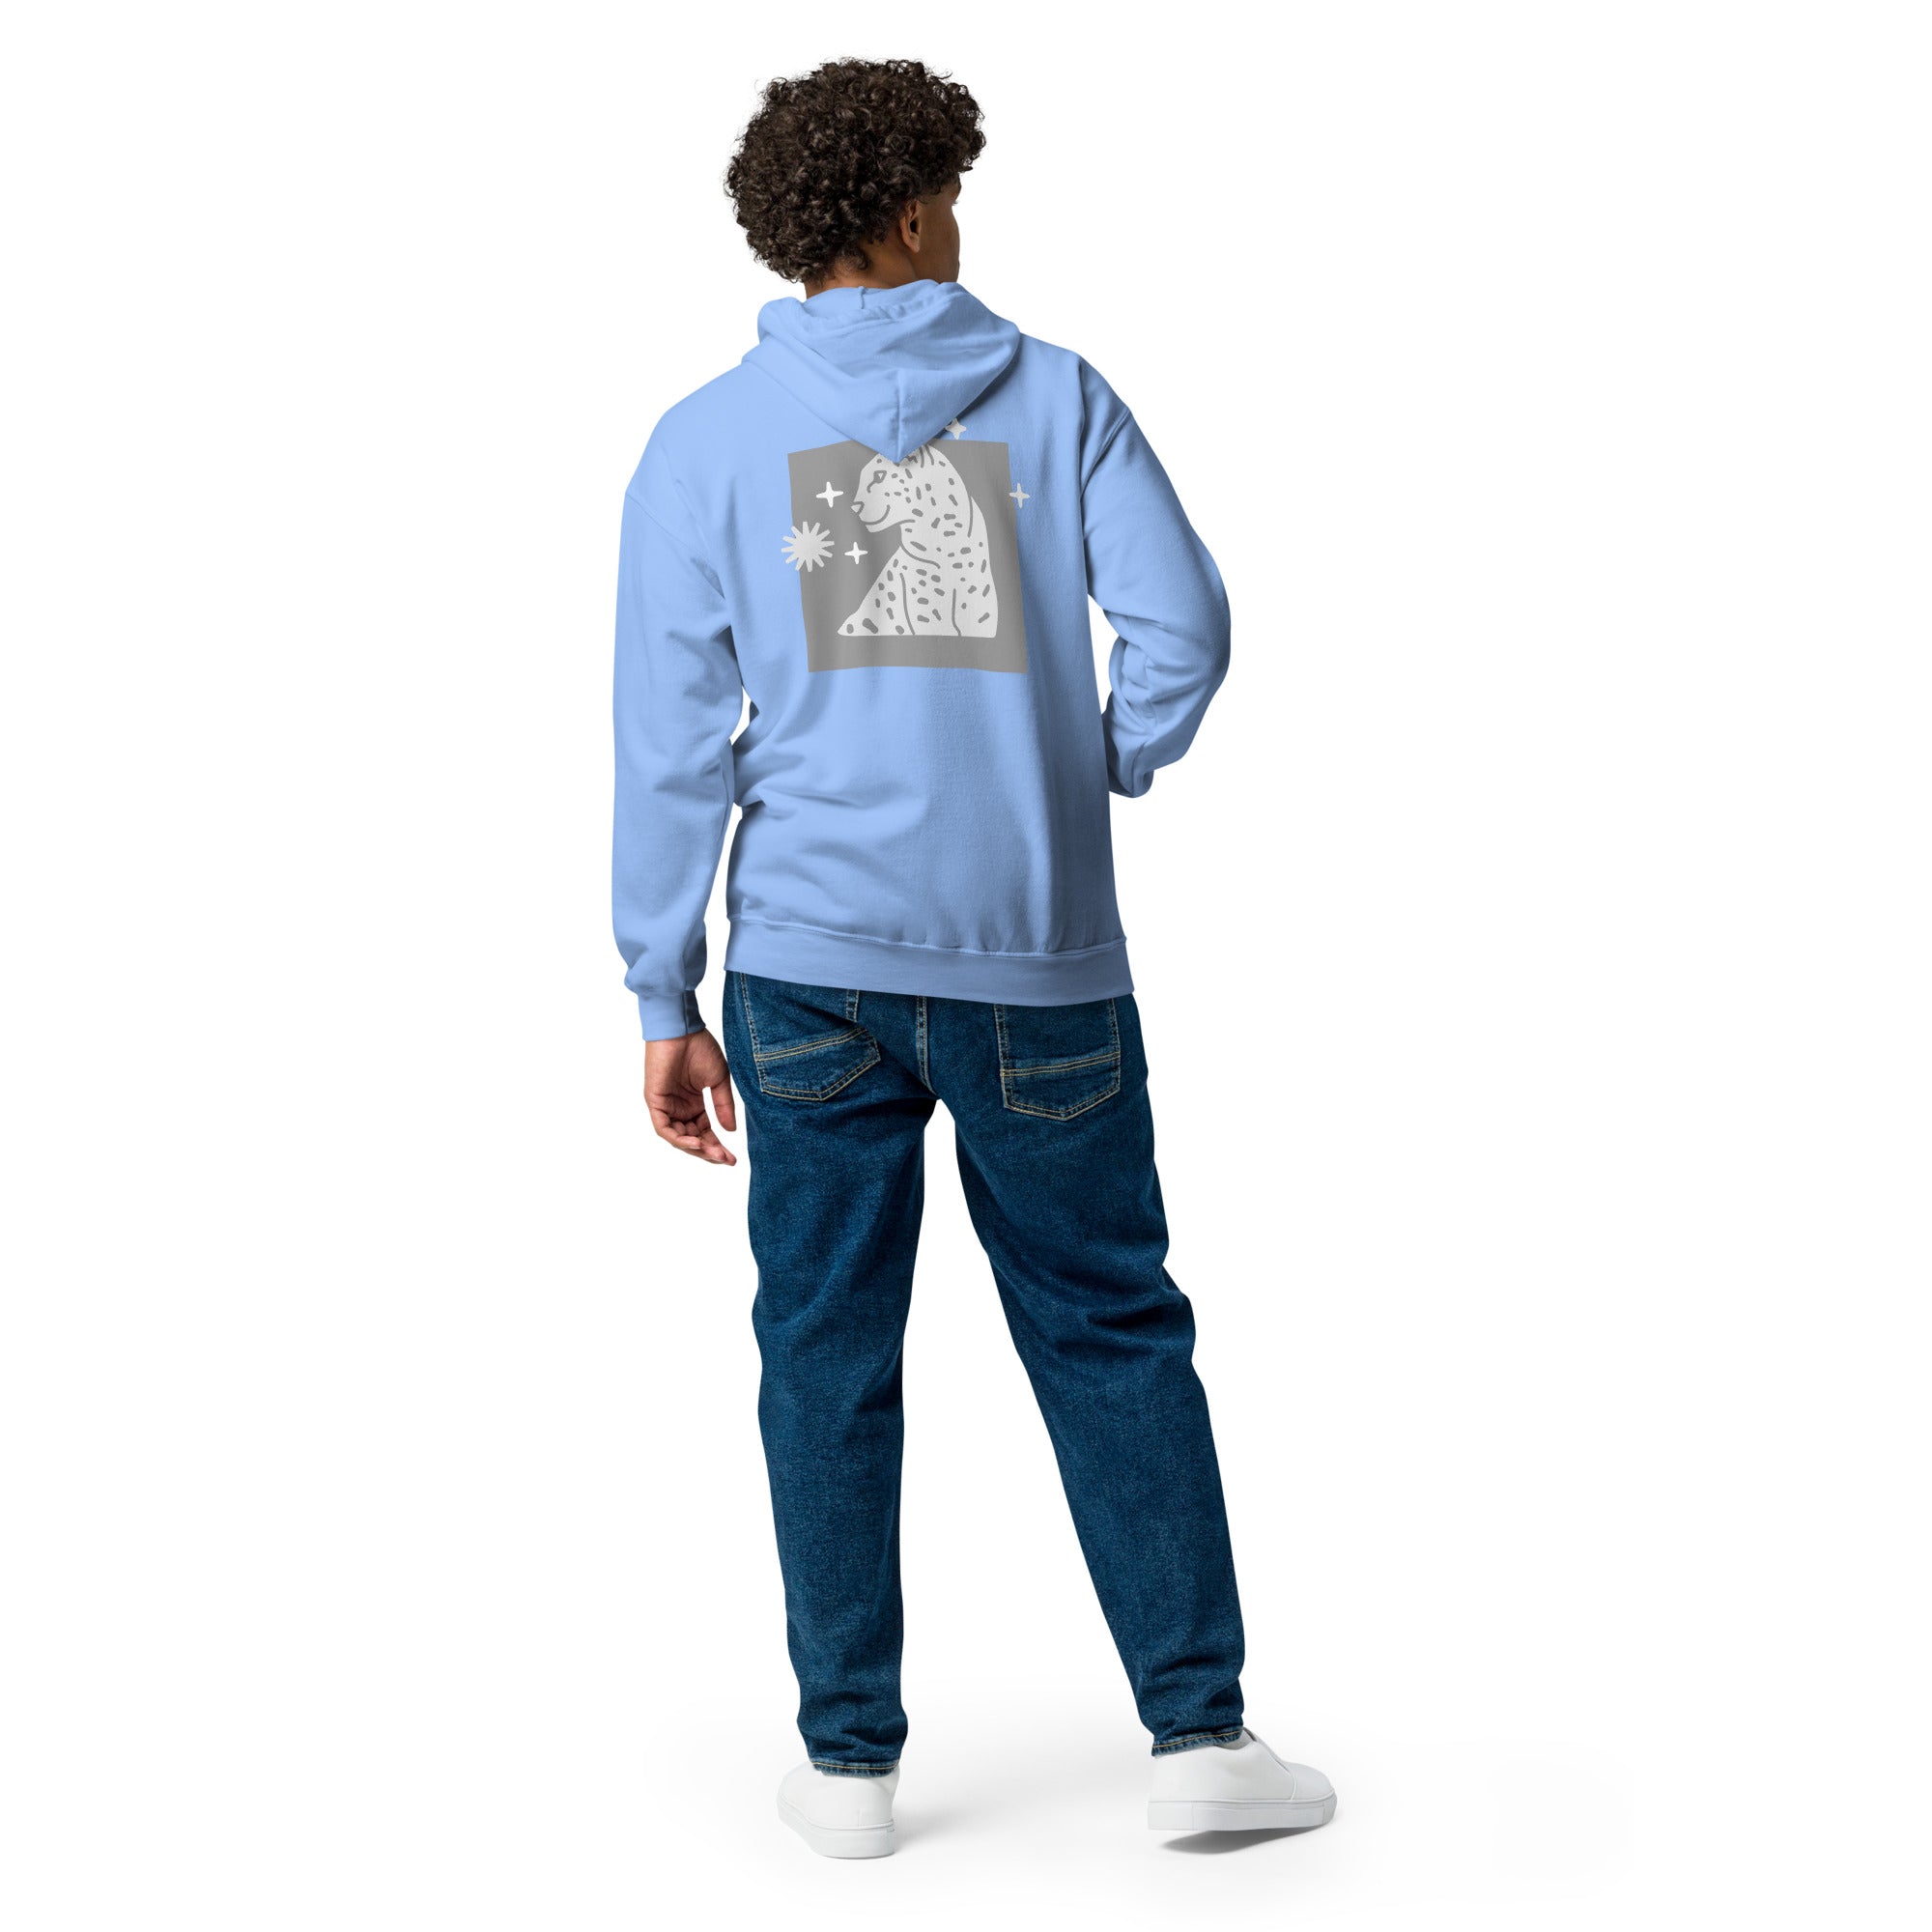 TIGER'S POSE -Unisex heavy blend zip hoodie